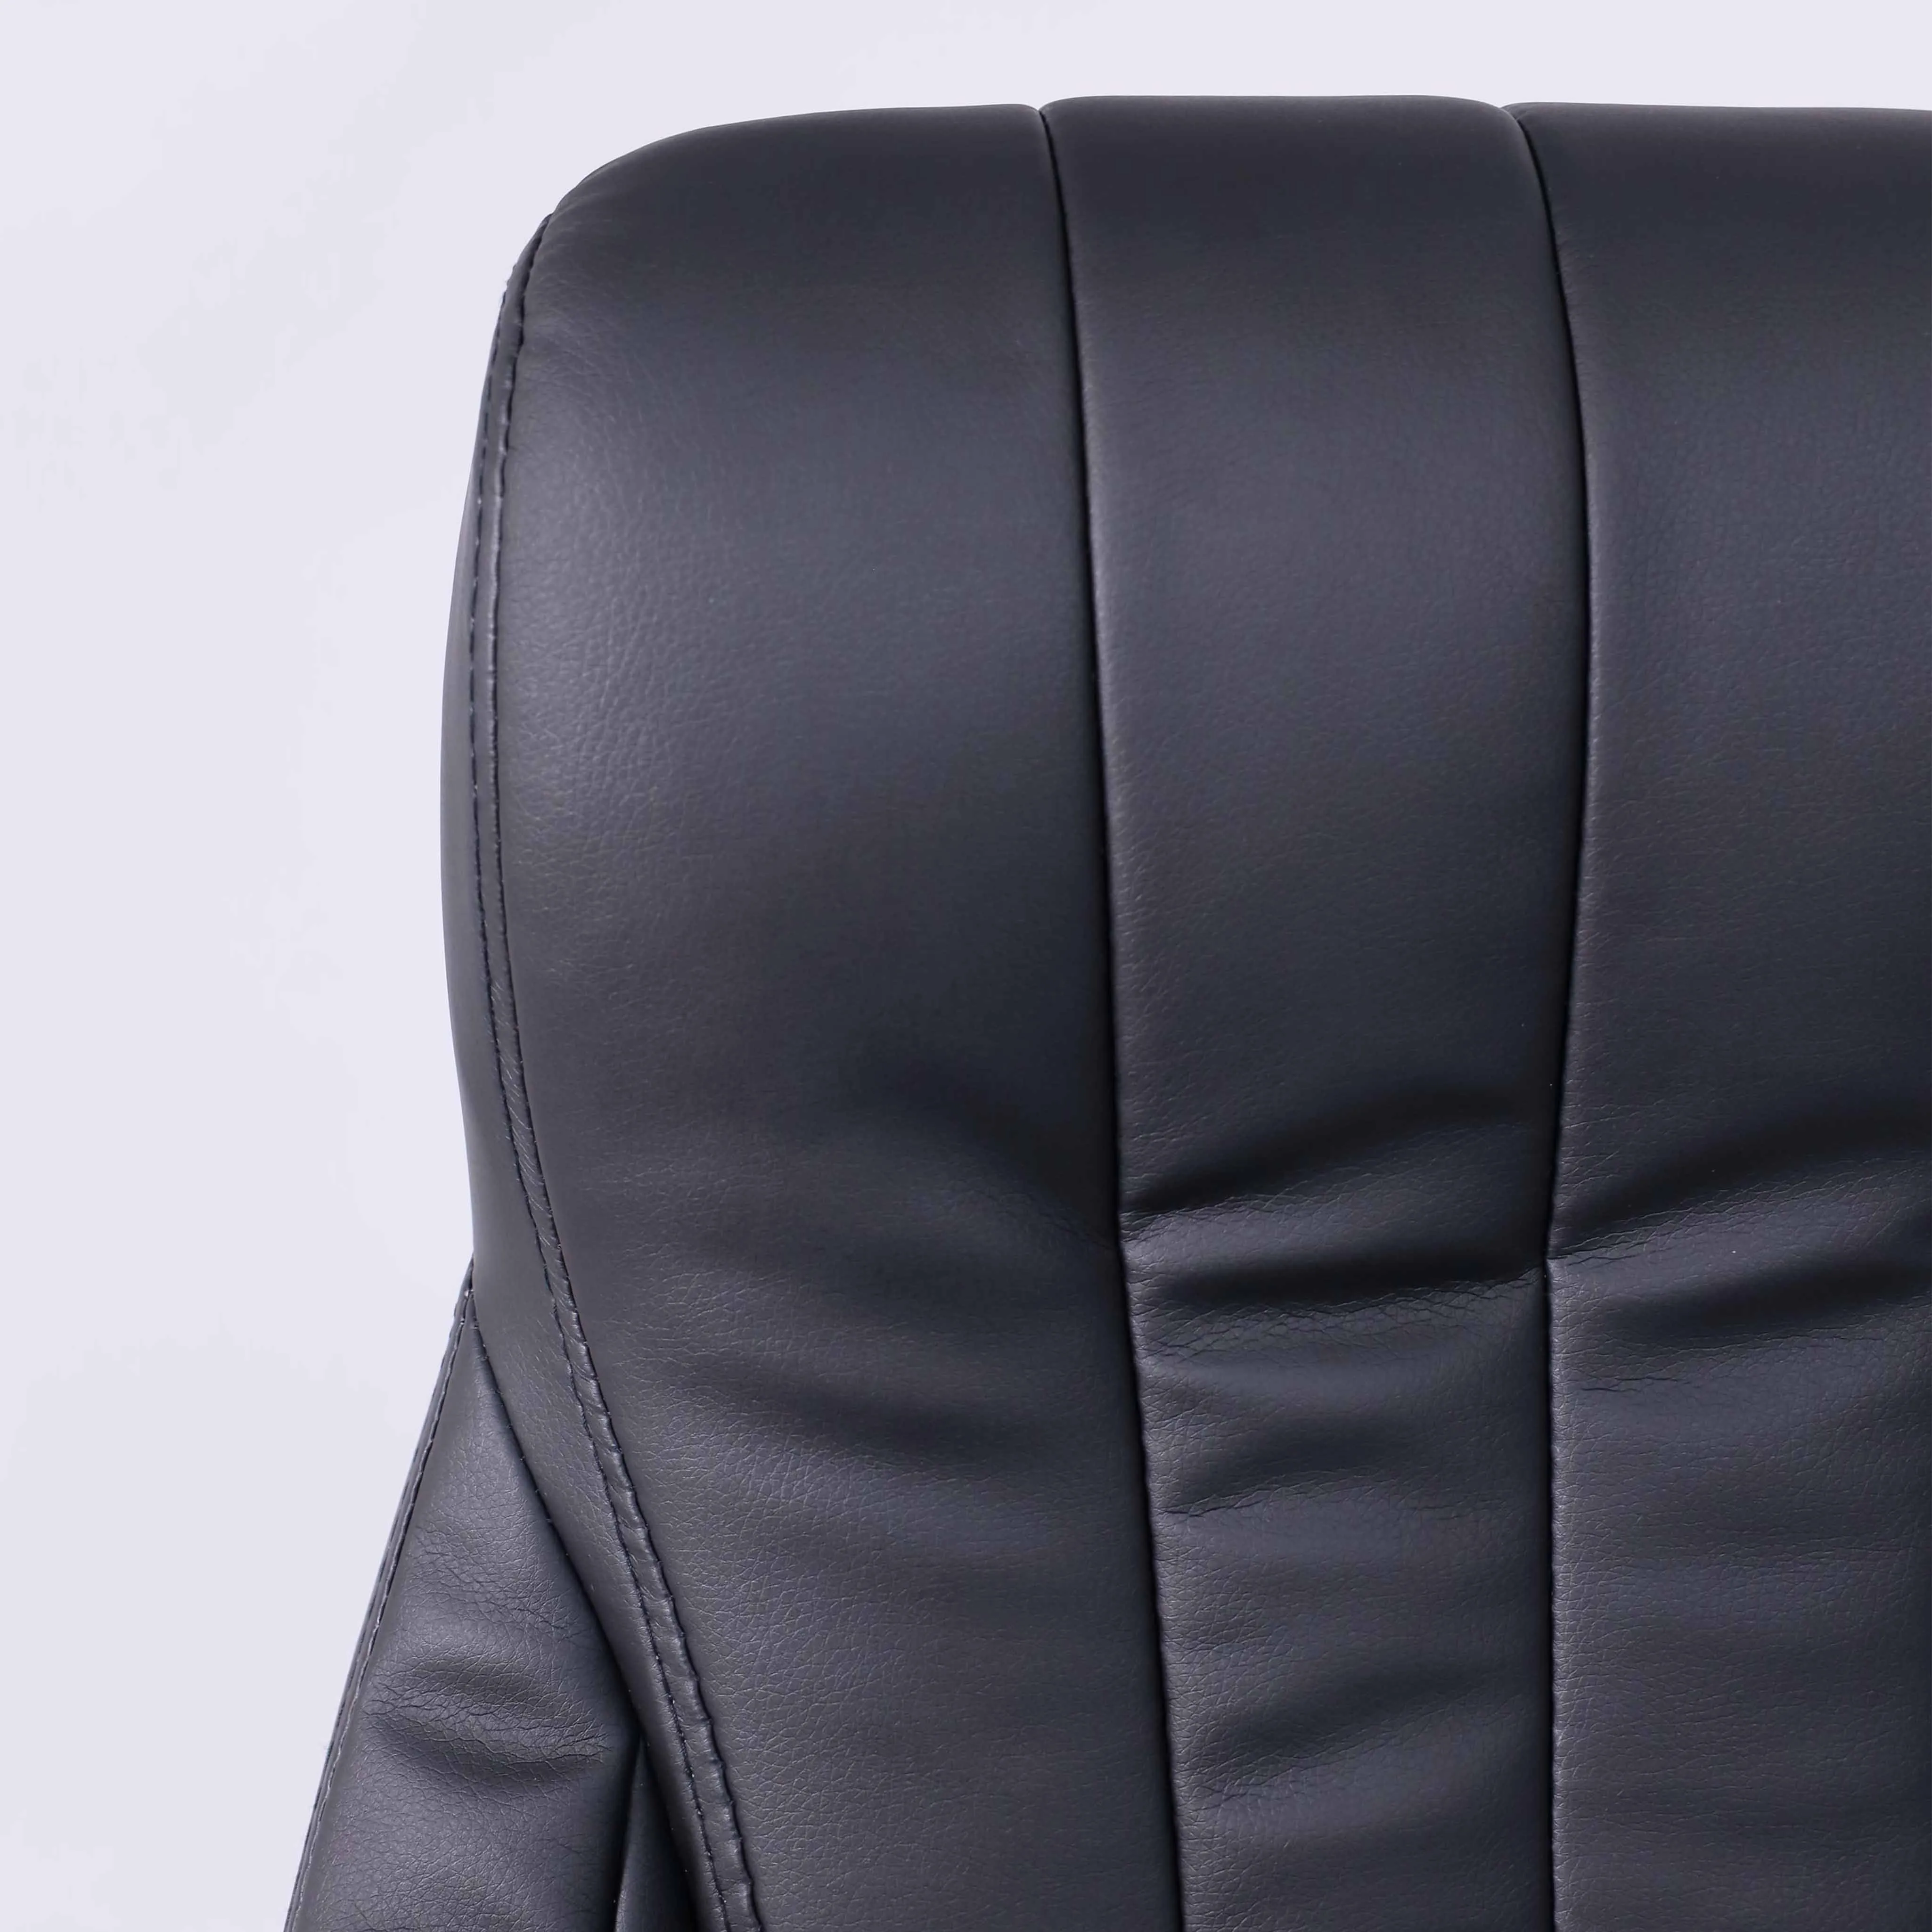 Кресло для руководителя MASTIF натуральная кожа черный 95531